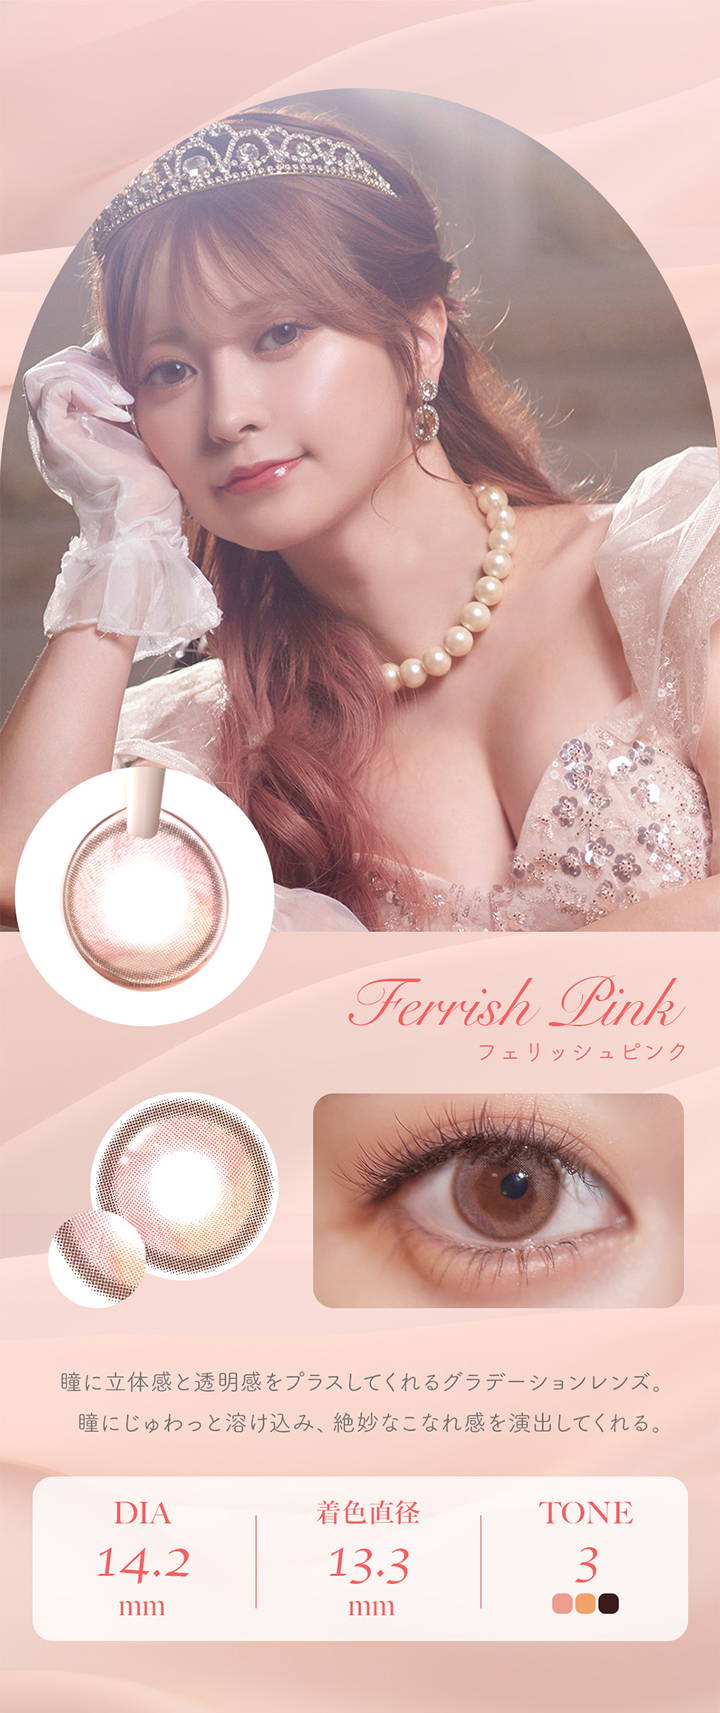 フェレーヌ(ferenne),Ferrish Pink,フェリッシュピンク,瞳に立体感と透明感をプラスしてくれるグラデーションレンズ。,瞳にじゅわっと溶け込み、絶妙なこなれ感を演出してくれる。,DIA 14.2mm,着色直径 13.3mm,TONE 3|フェレーヌ ferenne カラコン カラーコンタクト